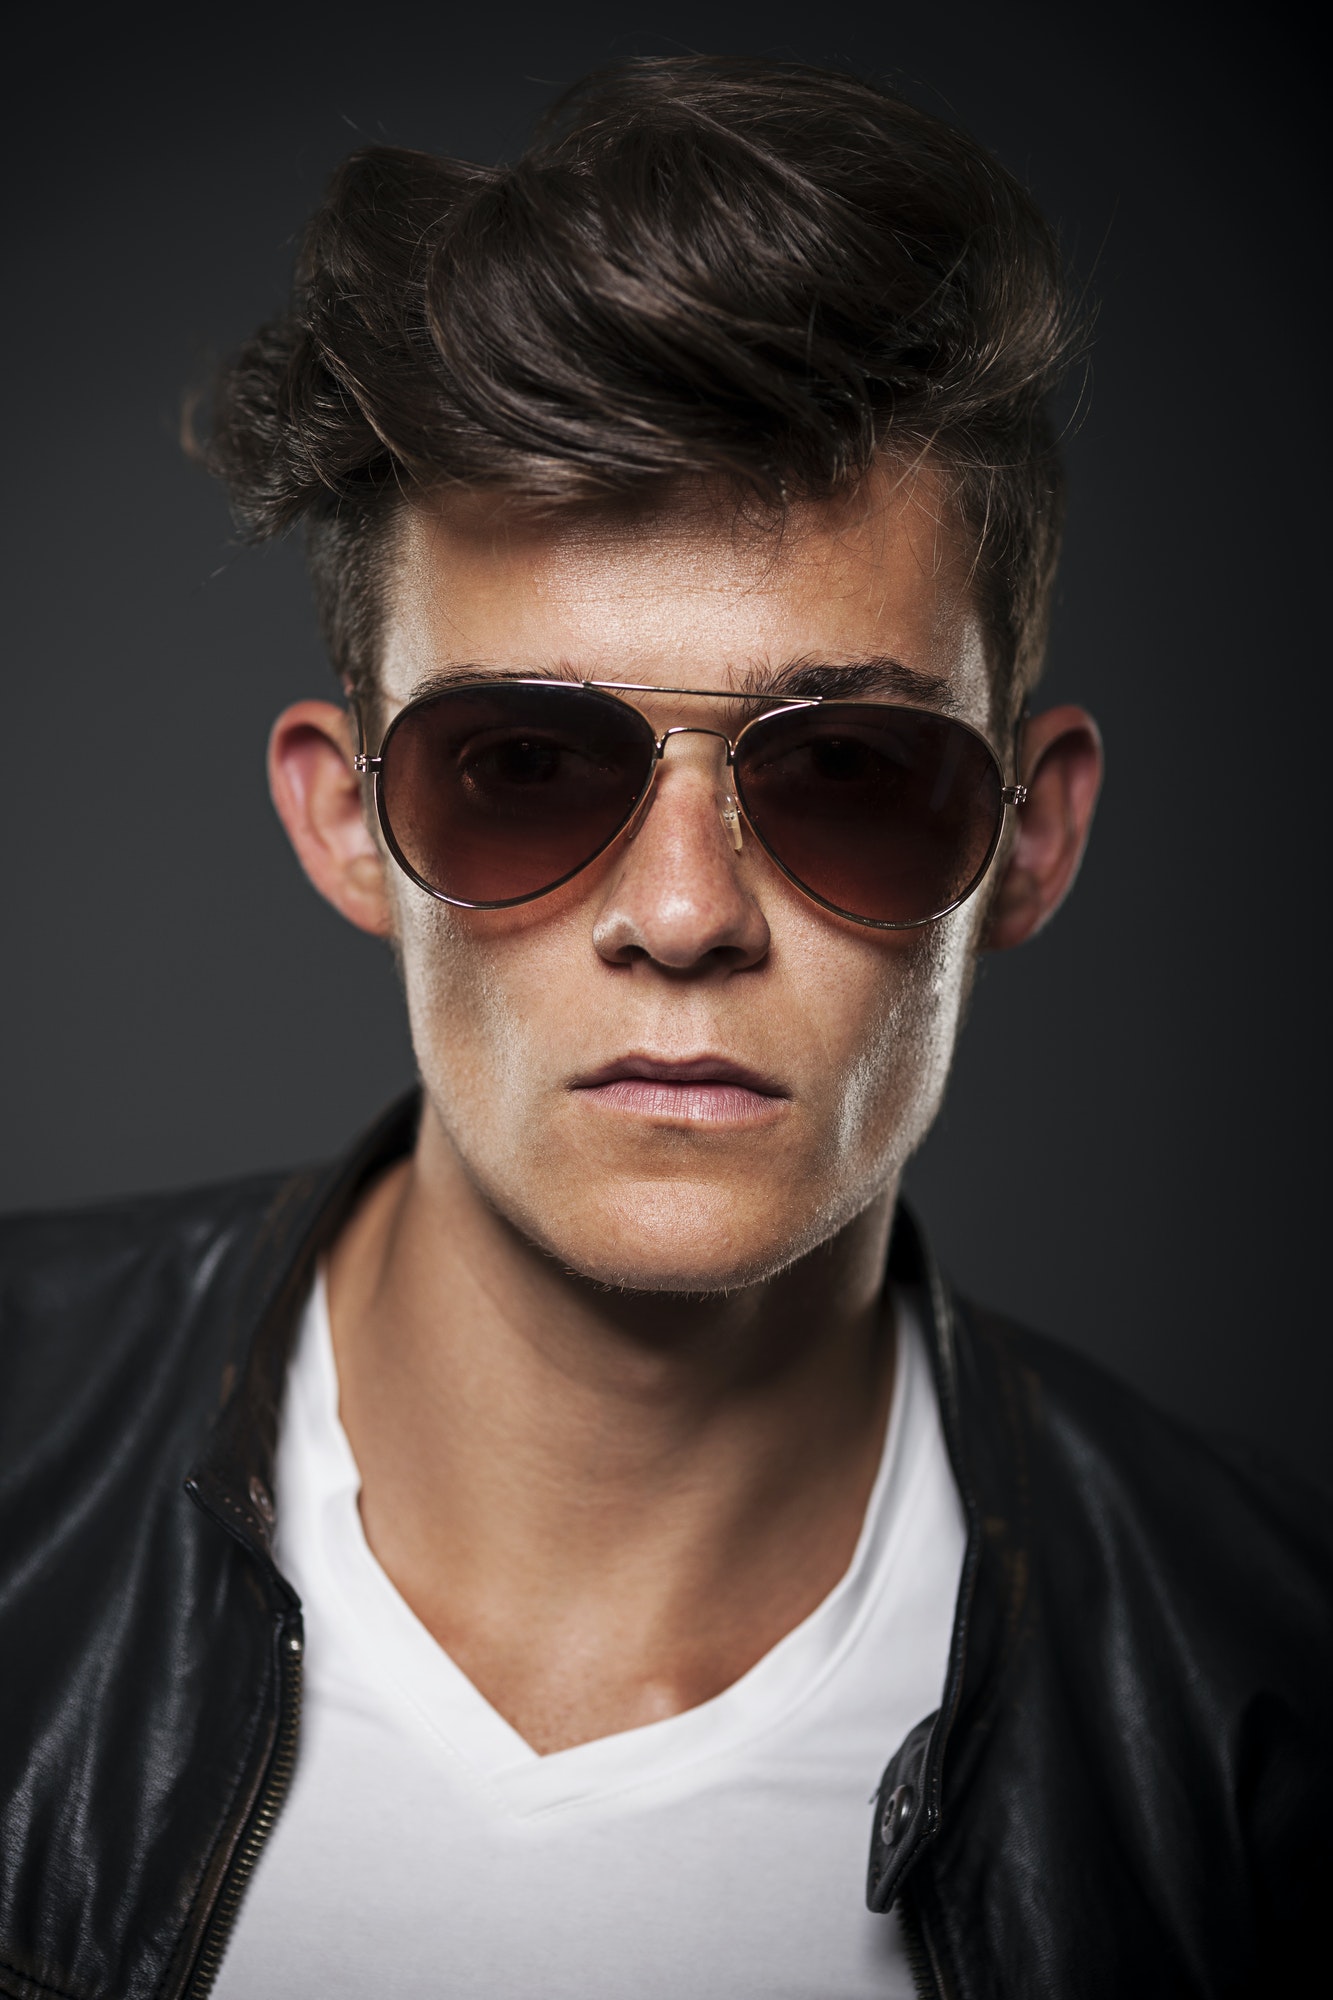 Portrait of male model wearing sunglasses